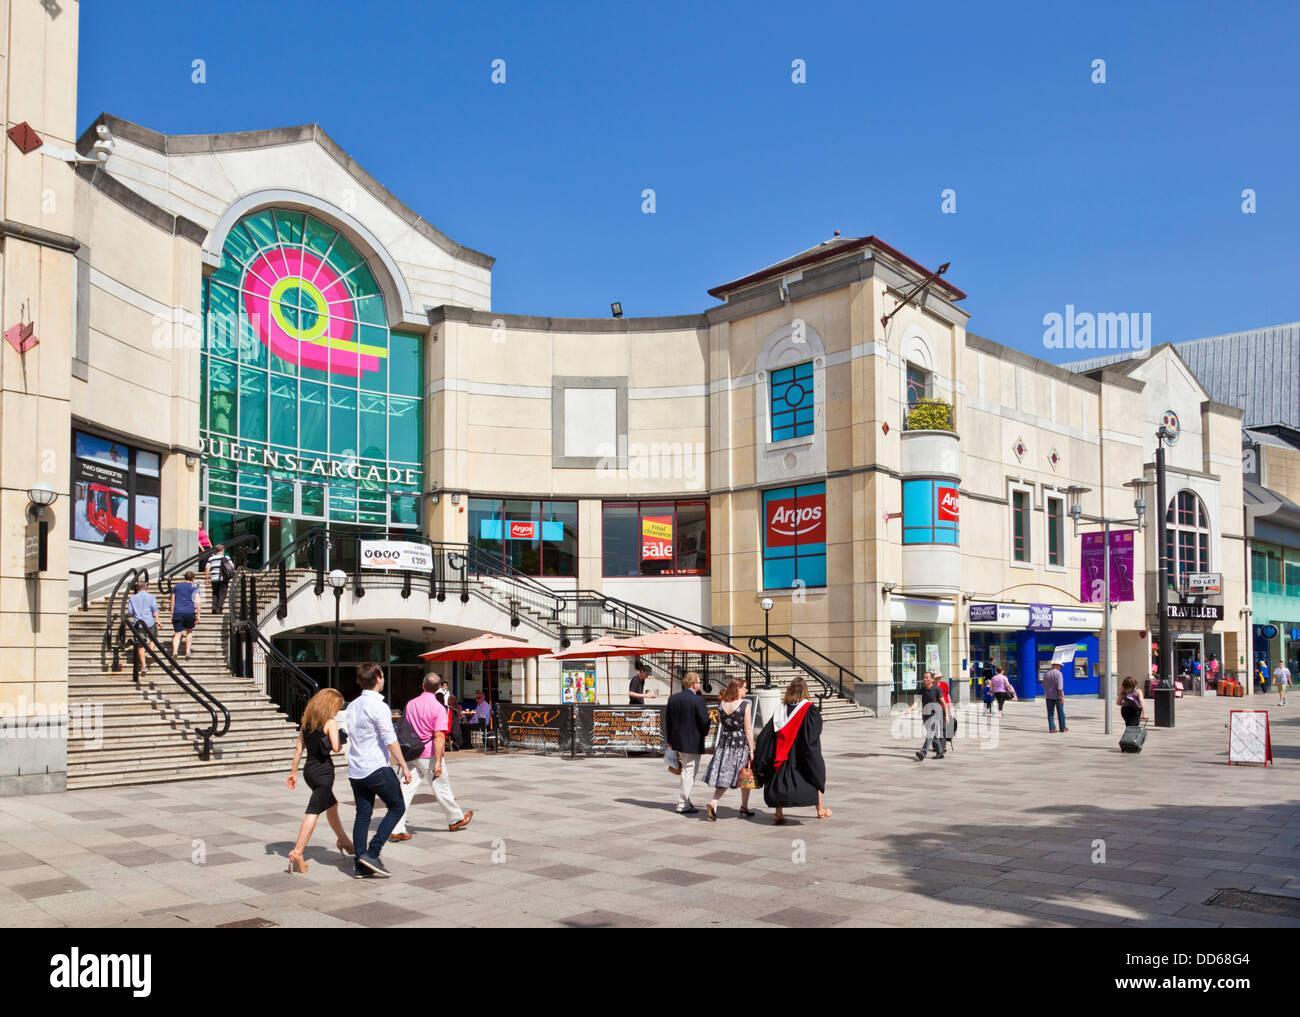 Queens Arcade-Außenansicht Eingang und Treppe Stadtzentrum von Cardiff South Glamorgan South Wales Großbritannien GB EU Europa Stockfoto